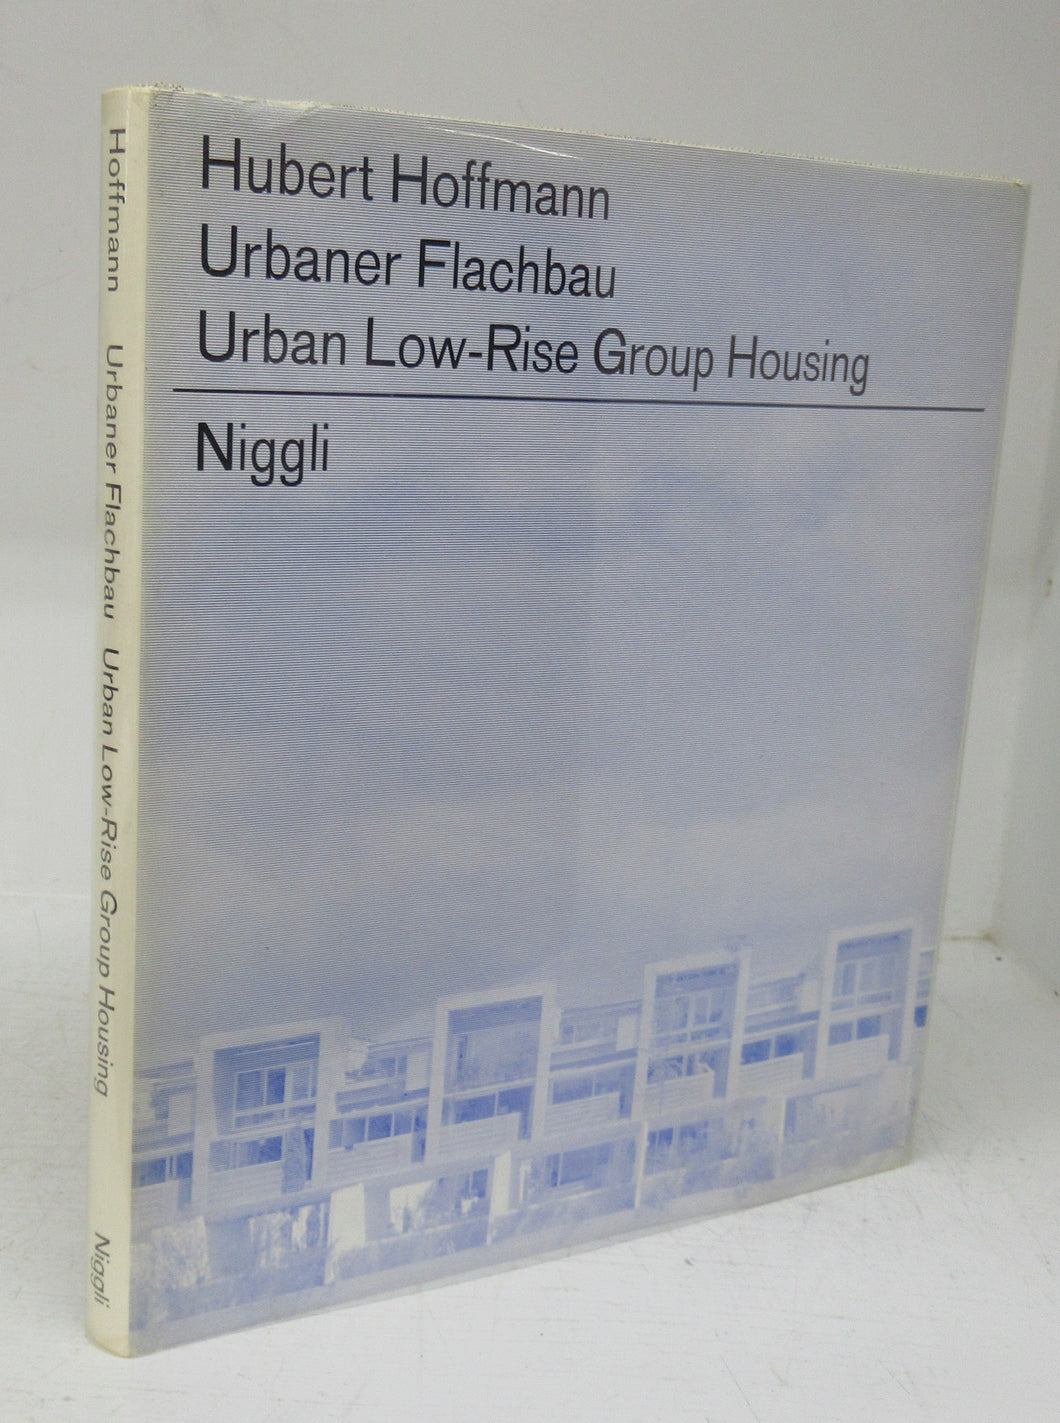 Urban Low-Rise Group Housing